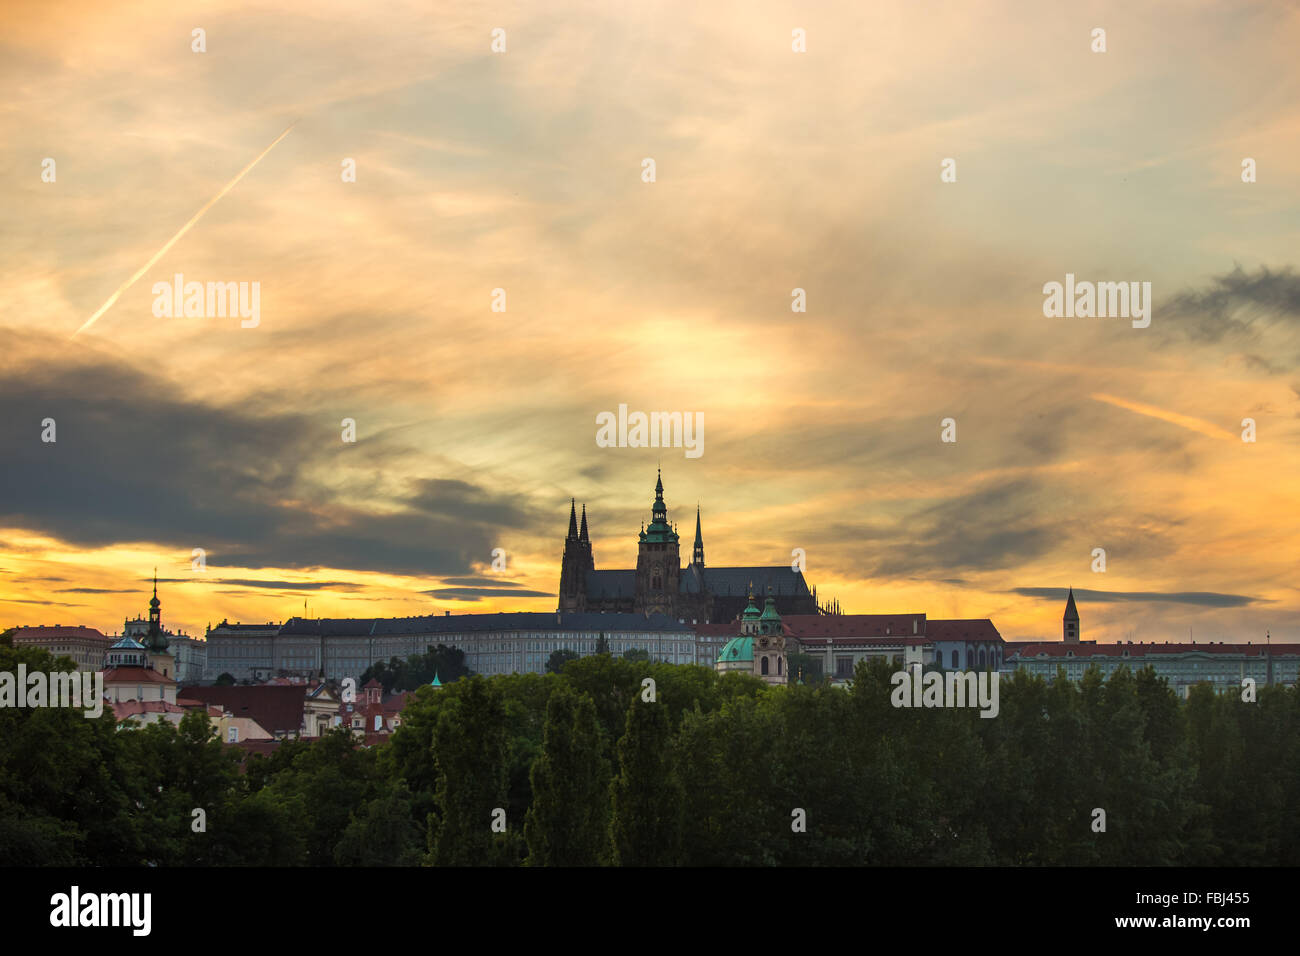 Tourisme et visites, vue de Prague cityscape dans la soirée. Ciel coucher de soleil flamboyant, la cathédrale Saint-Guy dans la distance Banque D'Images